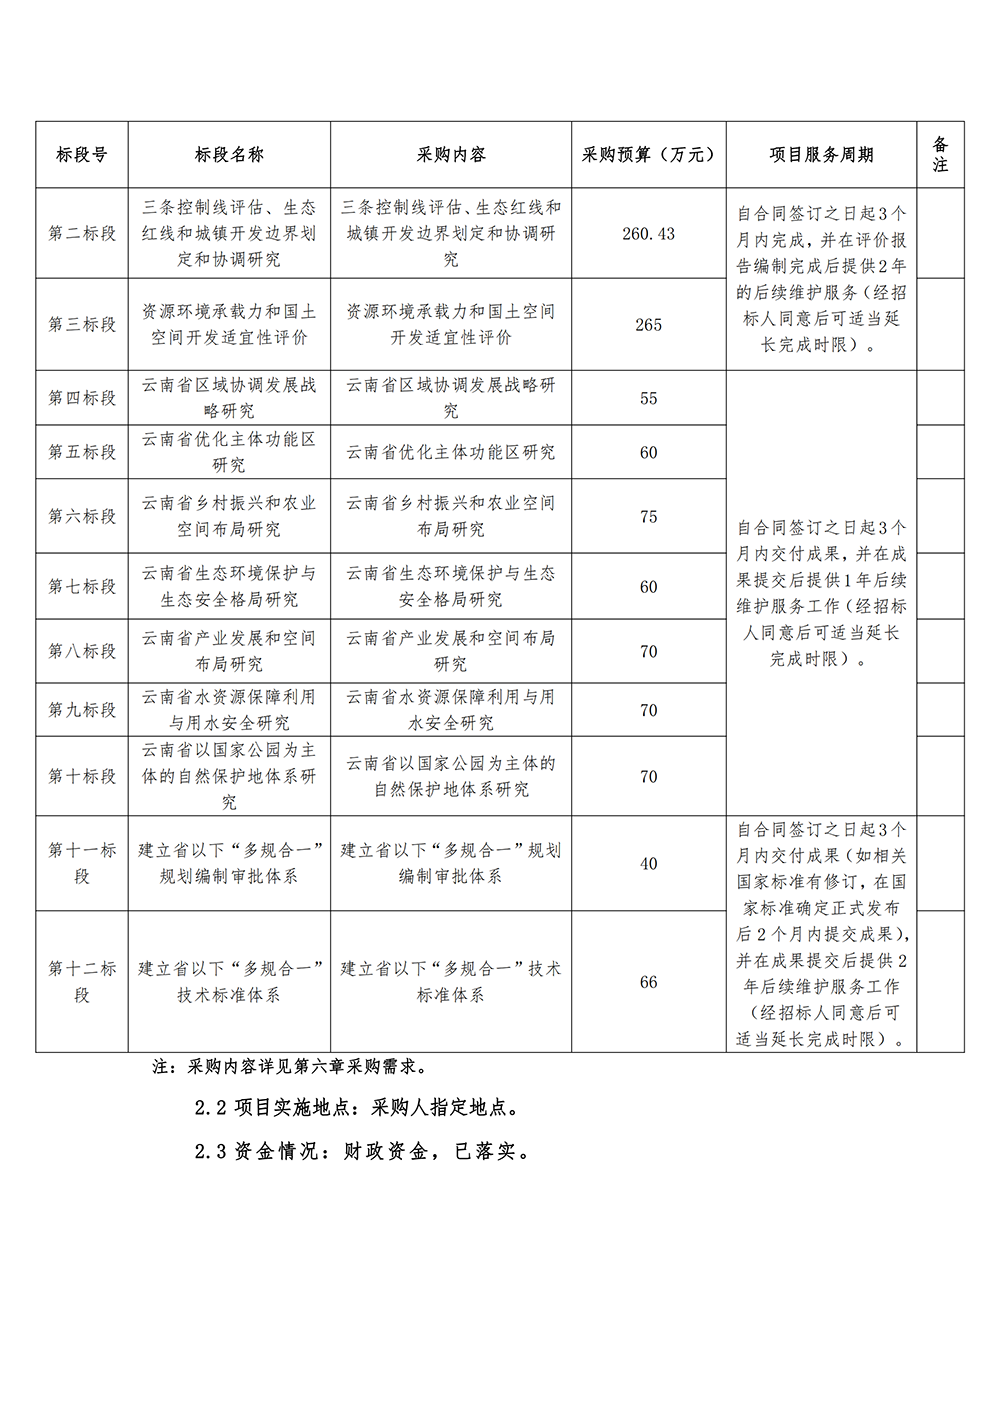 2019年云南省国土空间规划编制项目公开招标公告